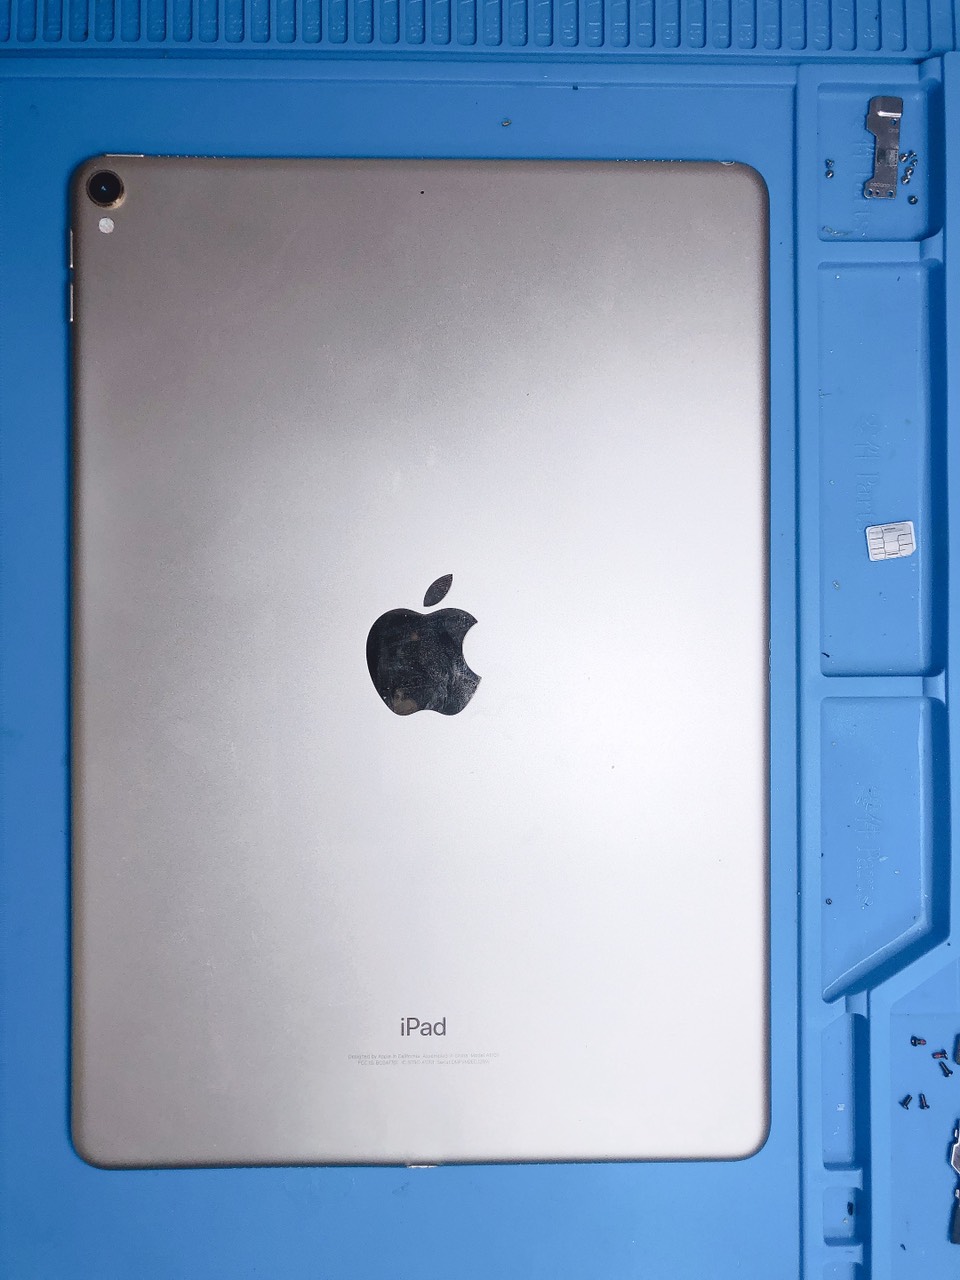 Thay vỏ iPad pro 10.5 inch Wifi giá rẻ, uy tín tại TpHCM - Bạch Long Care